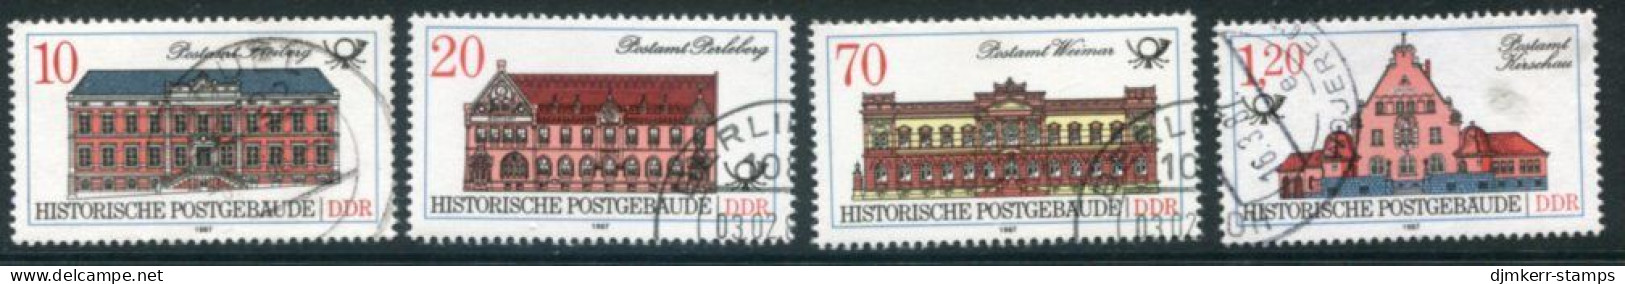 DDR 1987 Historic Postal Buildings Singles Used.  Michel 3067-70 - Oblitérés